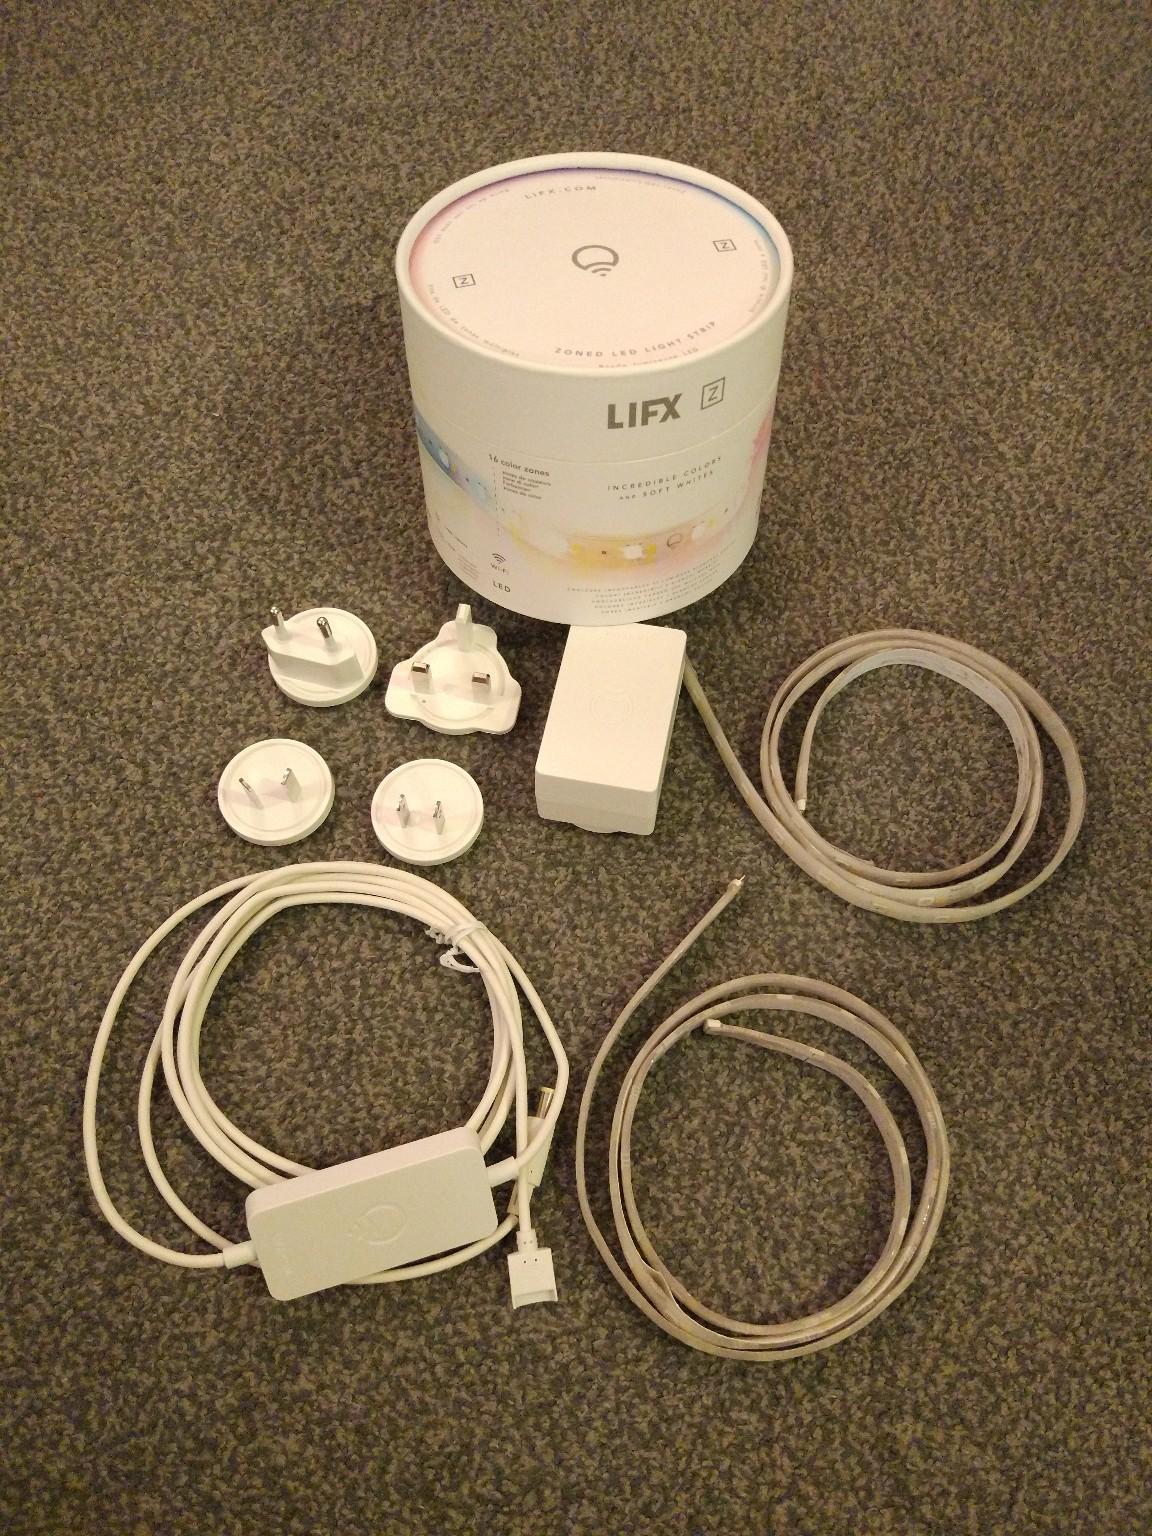 LIFX Z LED Light Strip Starter Kit in B90 Solihull for £25.00 for